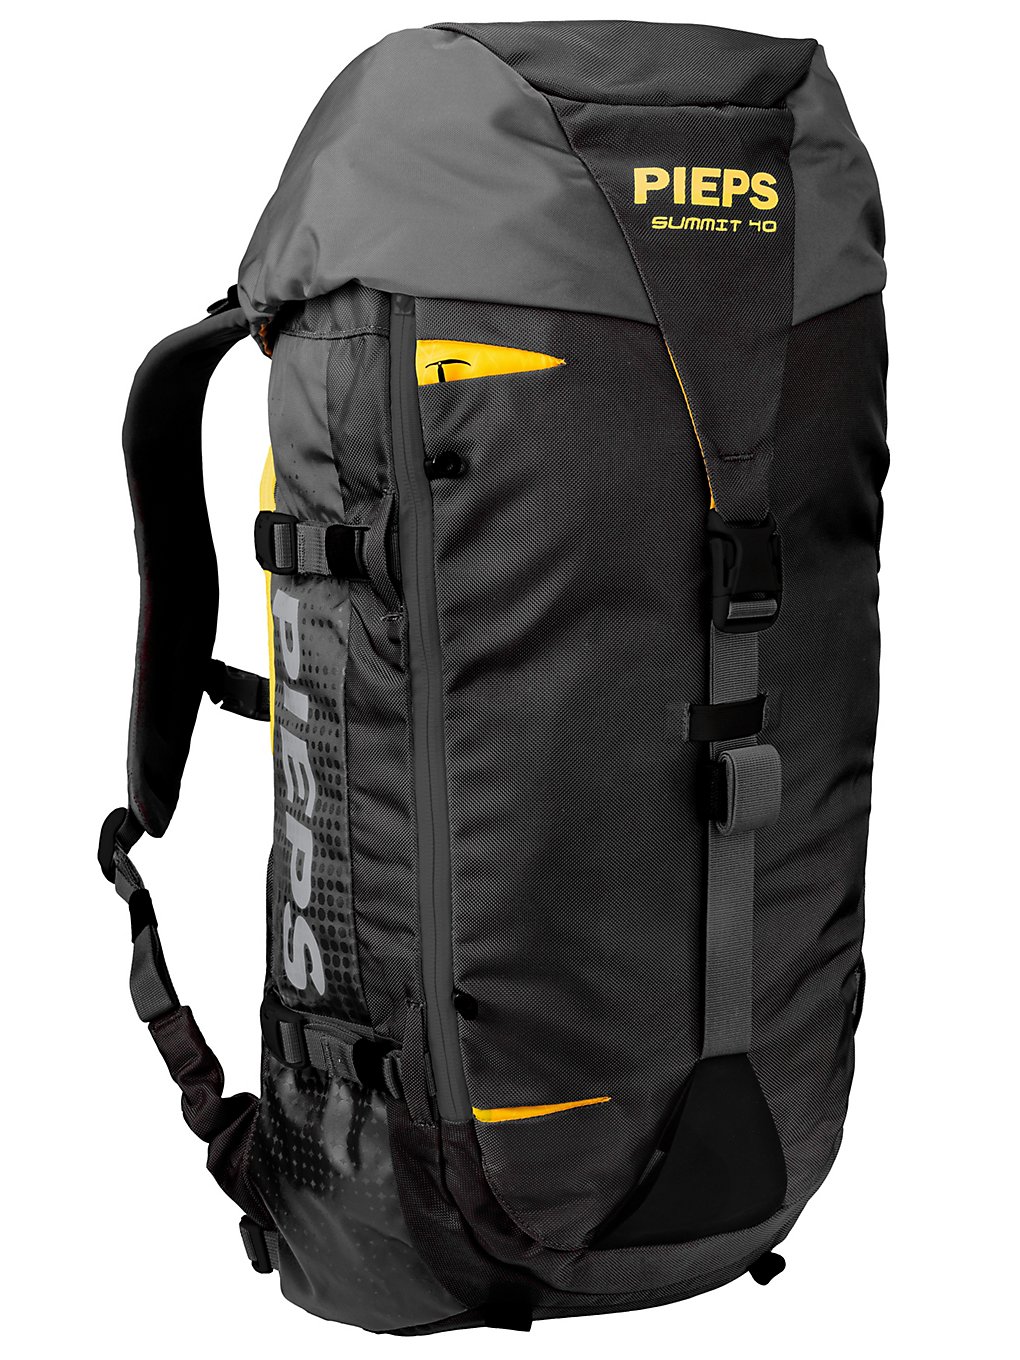 Pieps Summit 40 Backpack noir